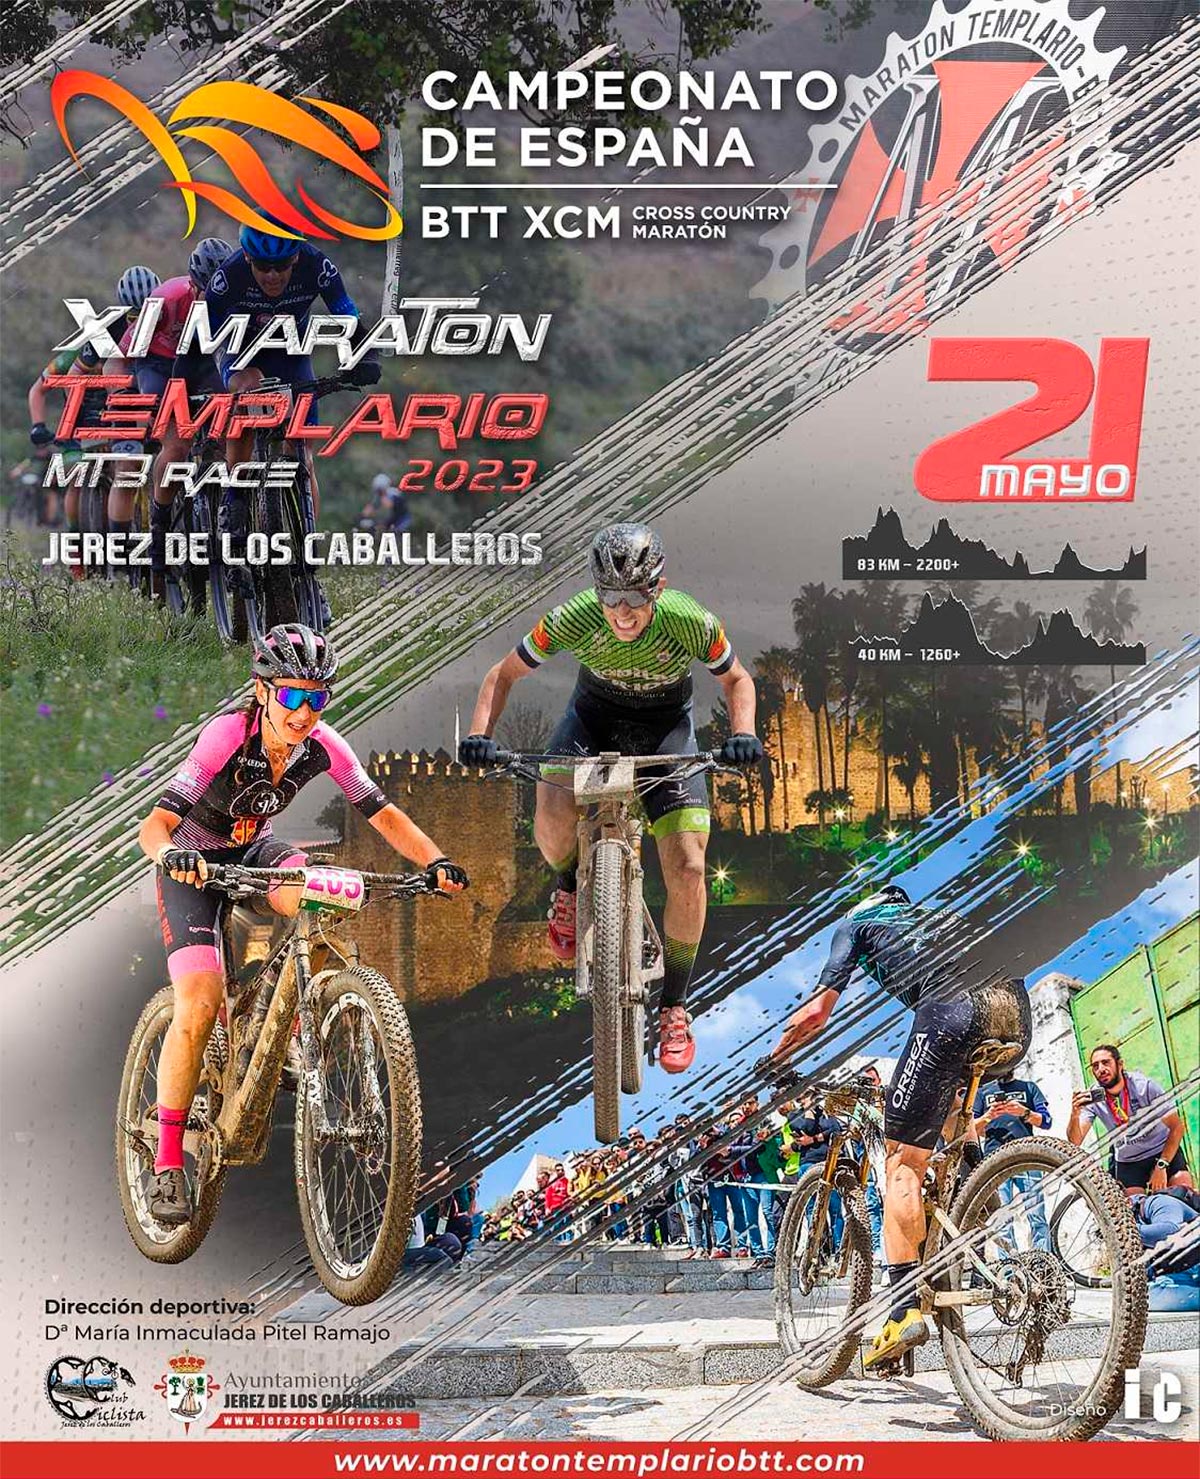 Todo listo para el Campeonato de España de XCM 2023 en Jerez de los Caballeros